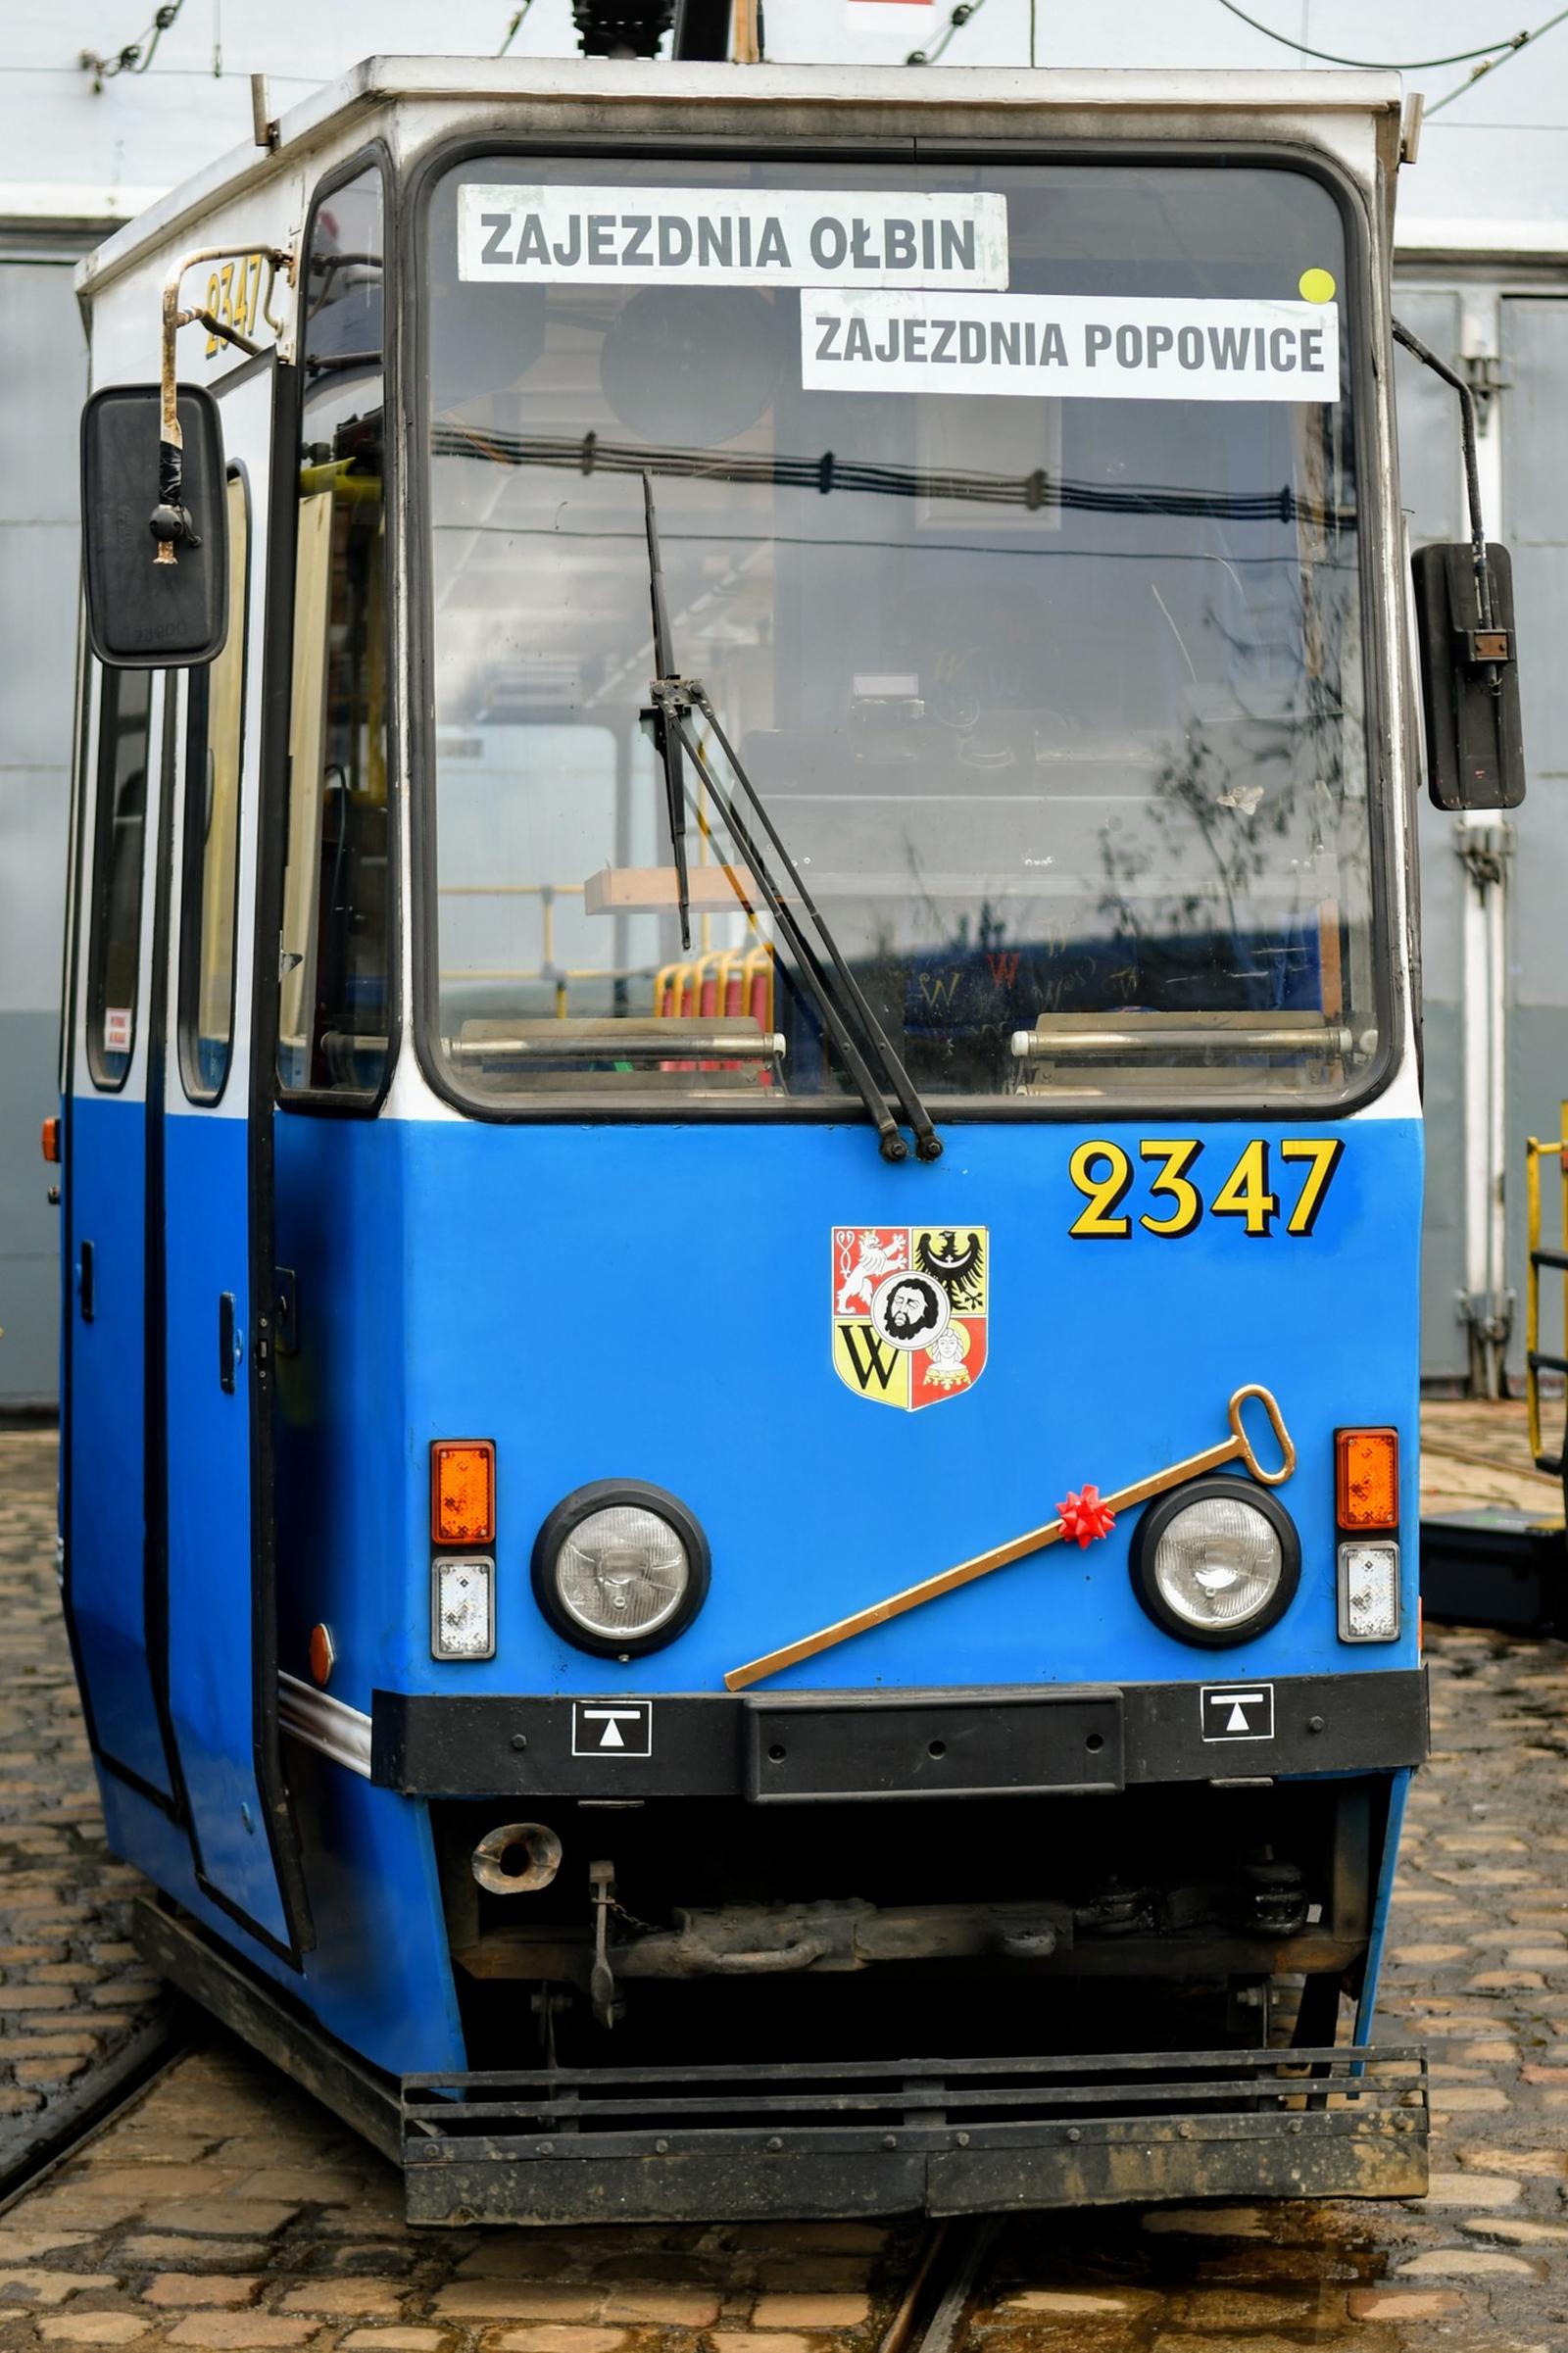 MPK Wrocław przekazało tramwaj oraz żuraw Klubowi Sympatyków Transportu Miejskiego